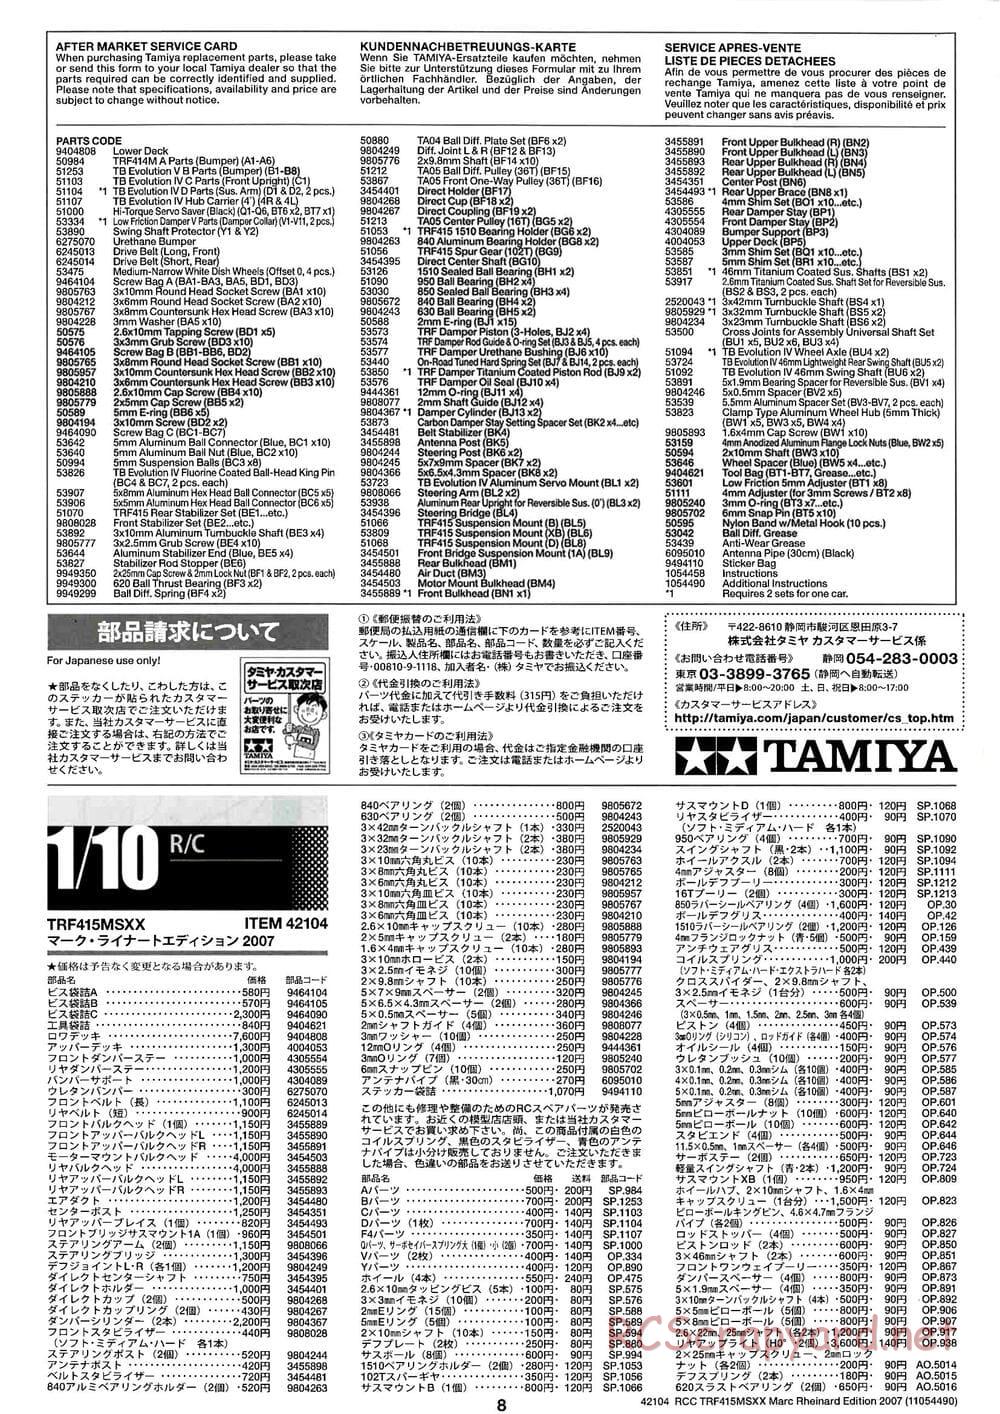 Tamiya - TRF415 MSXX - Marc Rheinard Edition 2007 Chassis - Manual - Page 8